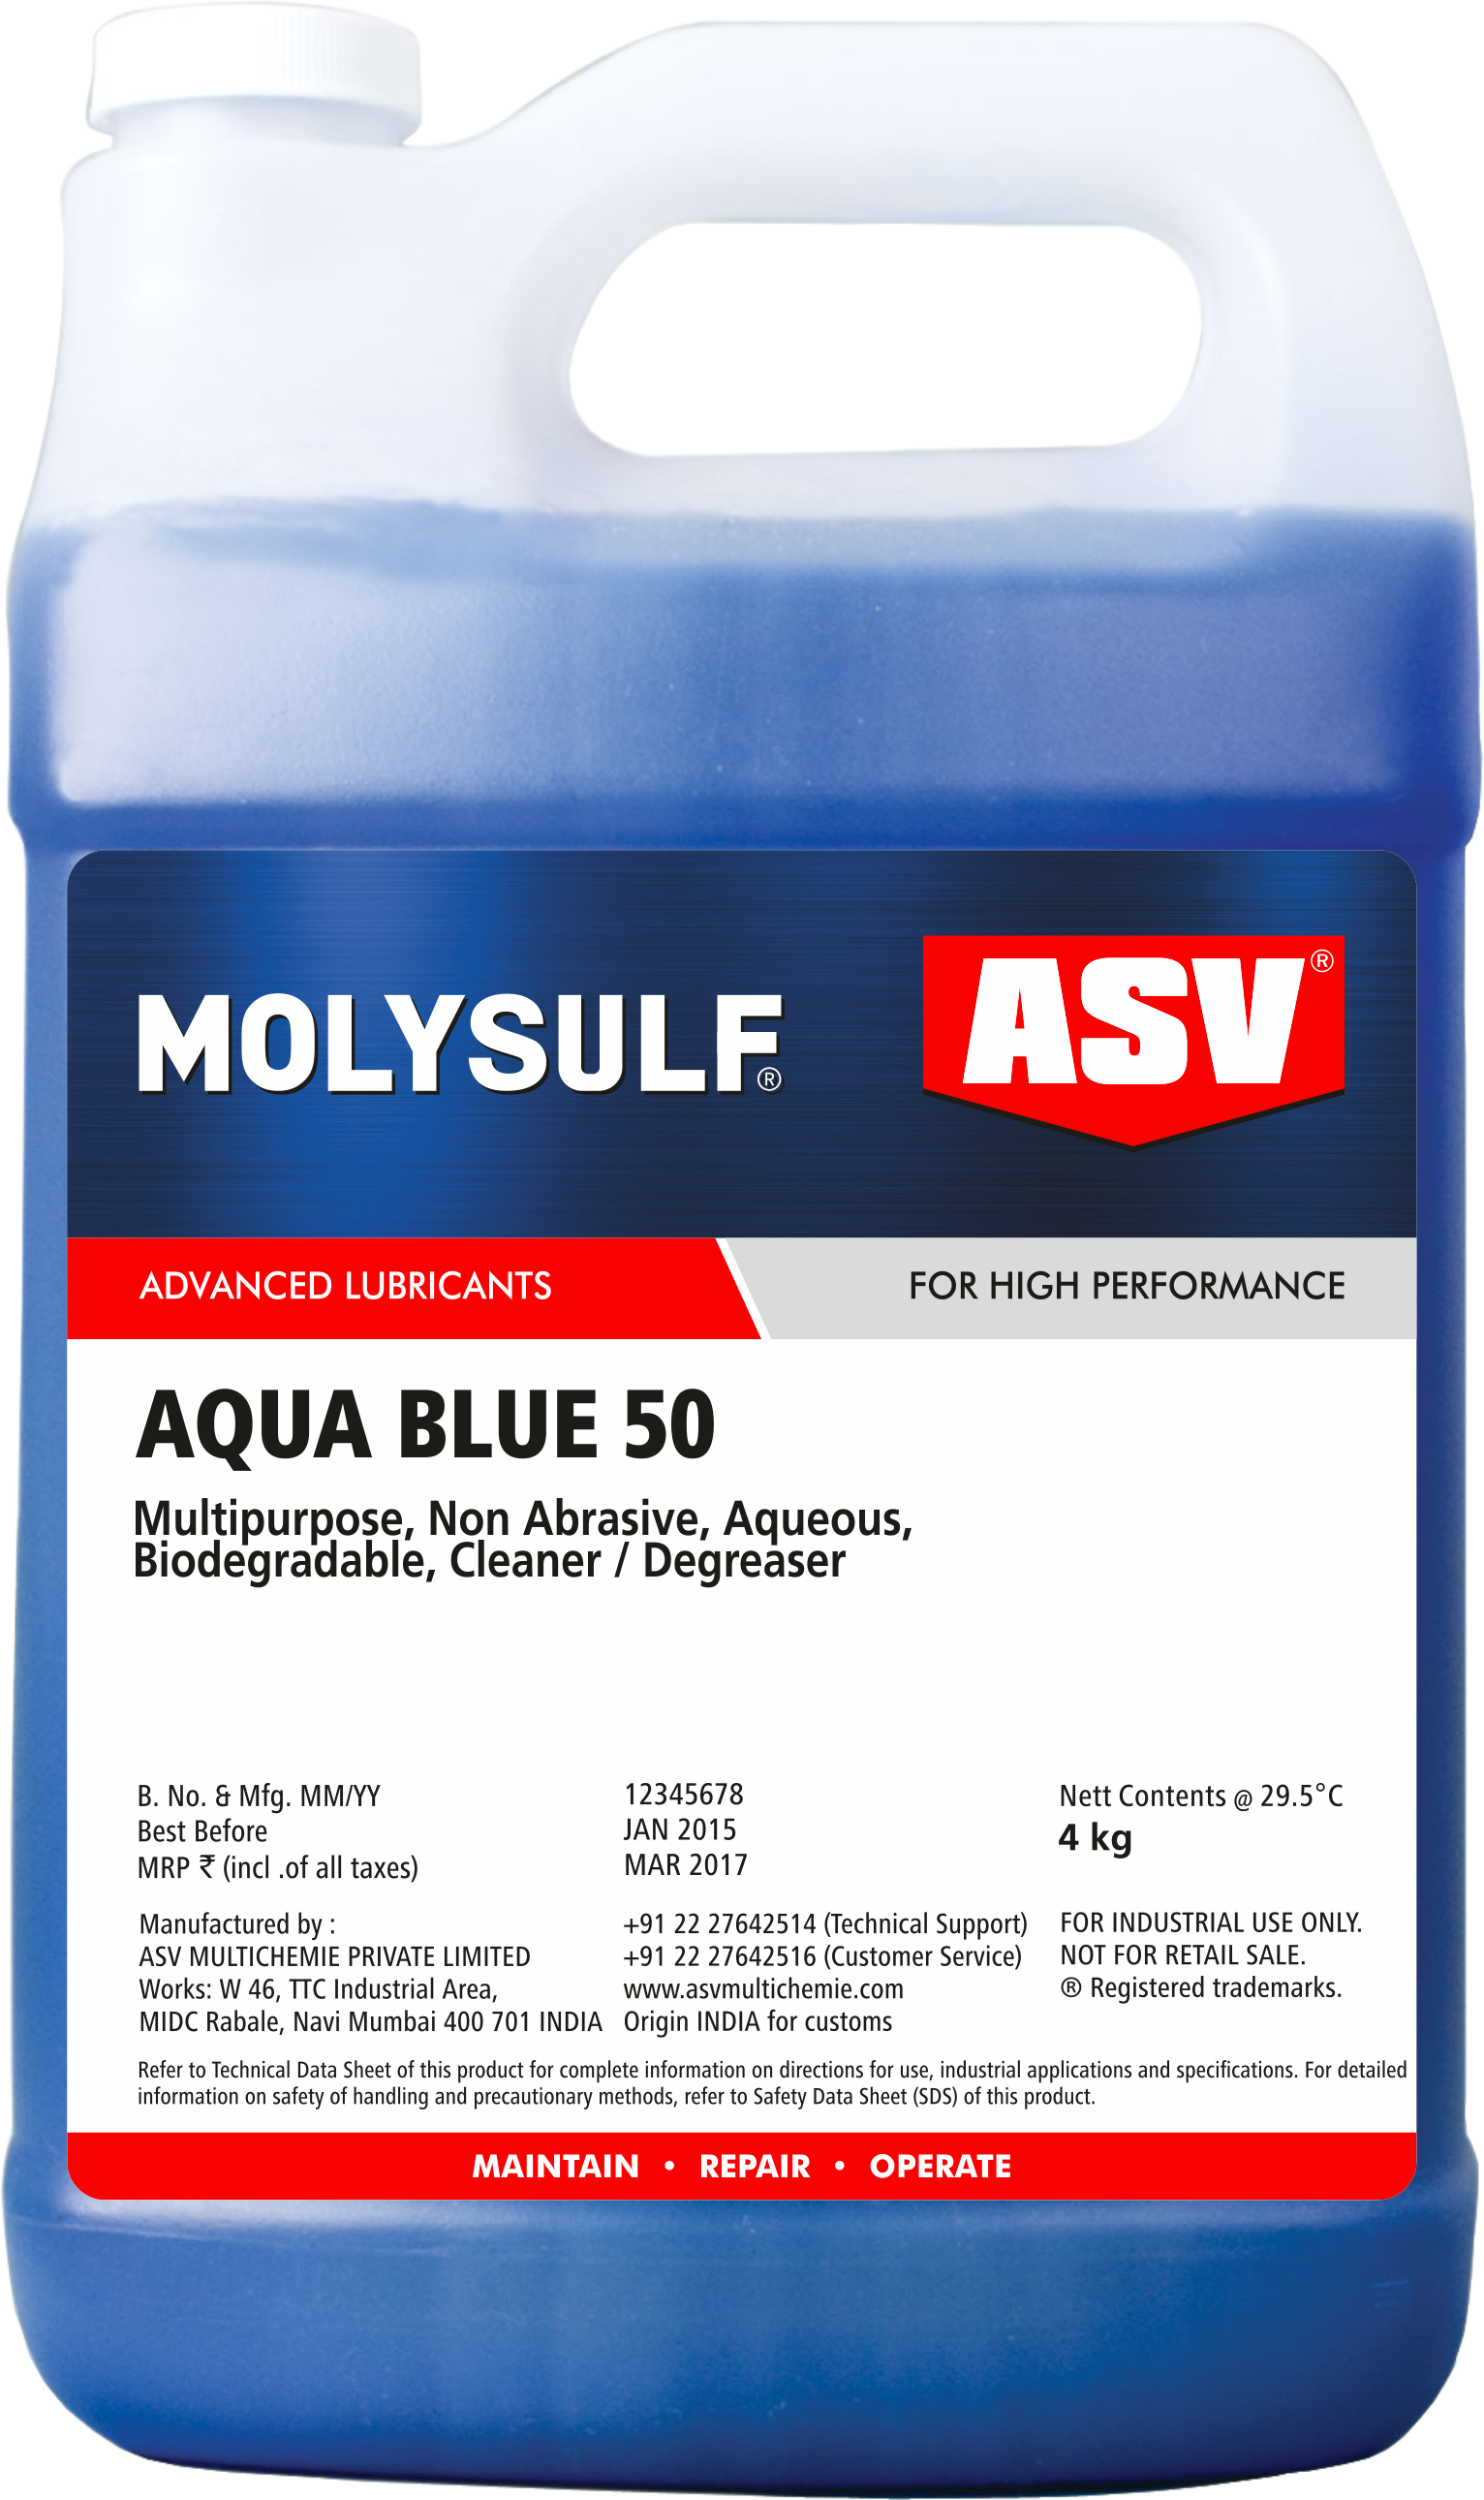 Aqua Blue 50